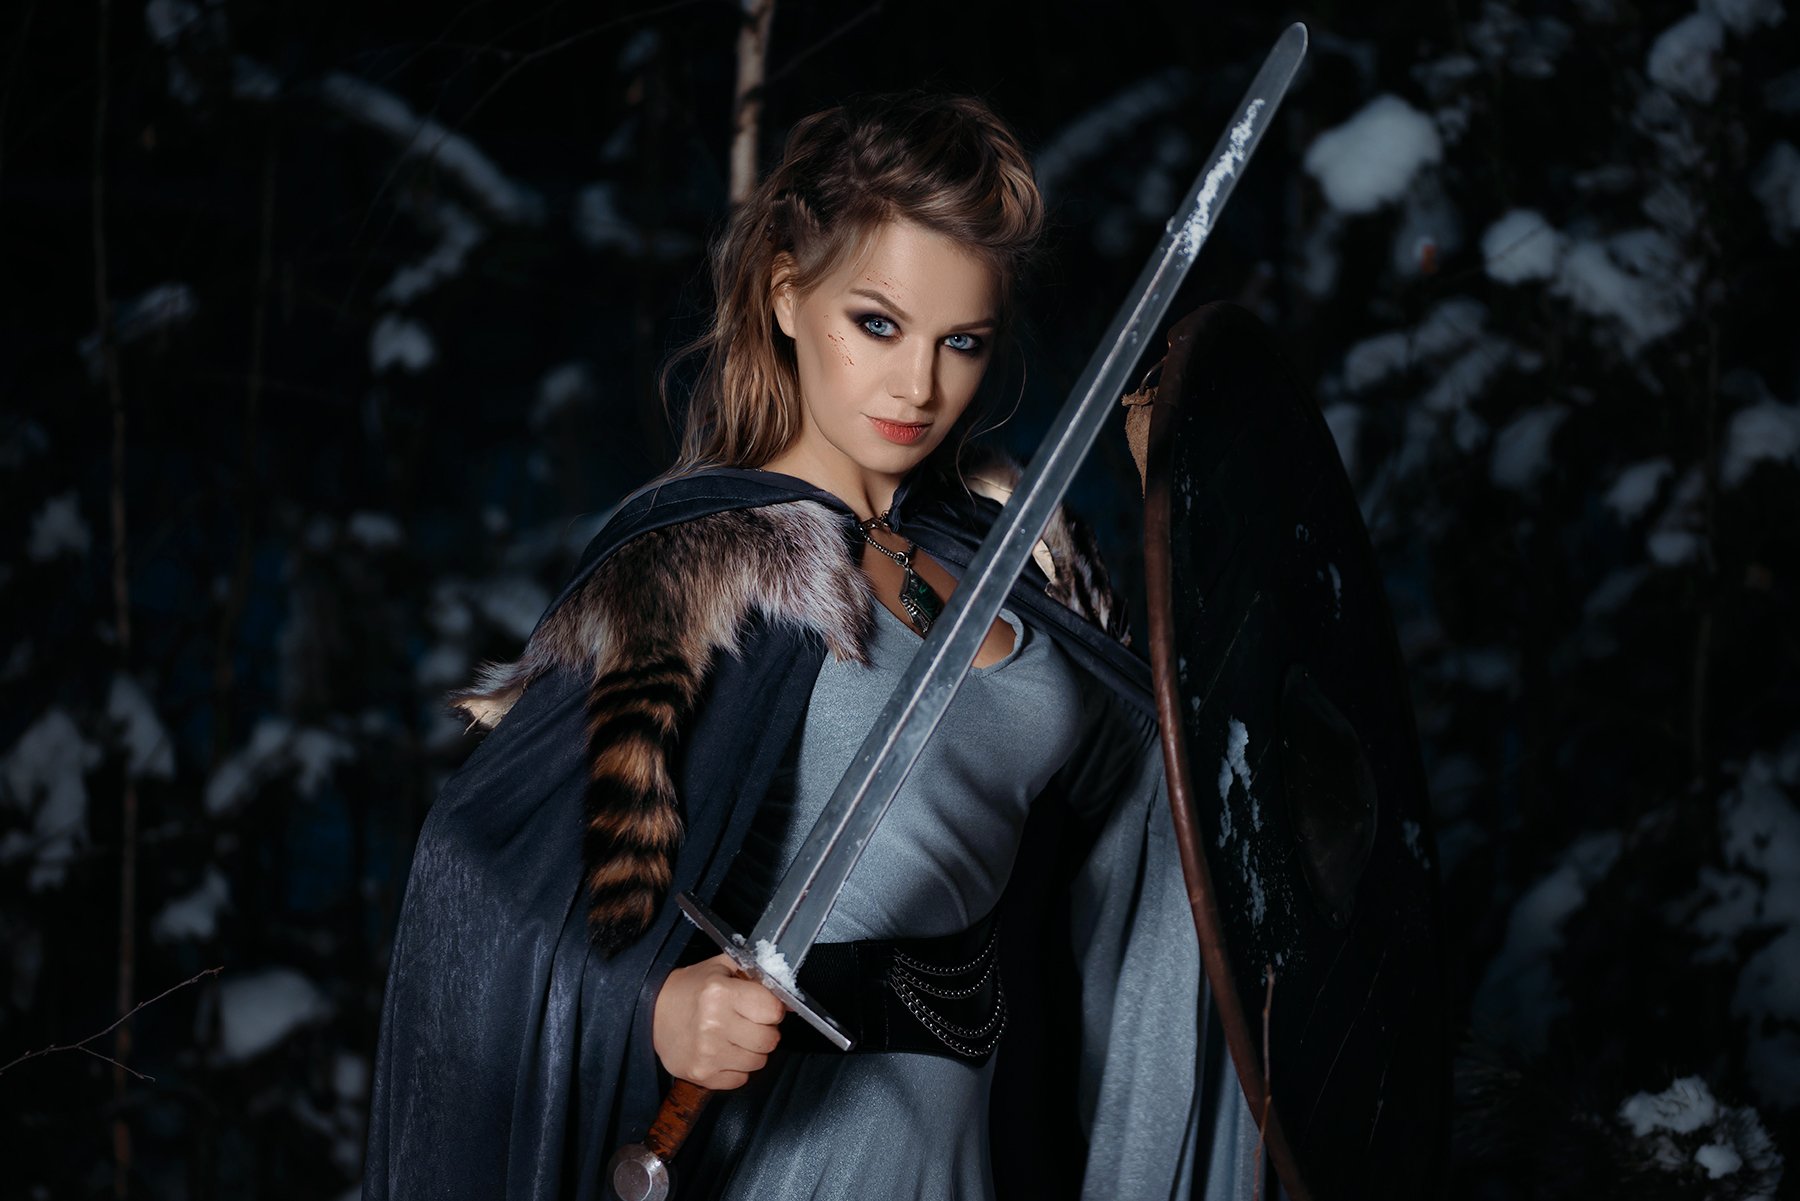 викинги, щит, меч, девушка, платье, портрет, 2016, зима, лес, скандинавия, Илья Новицкий